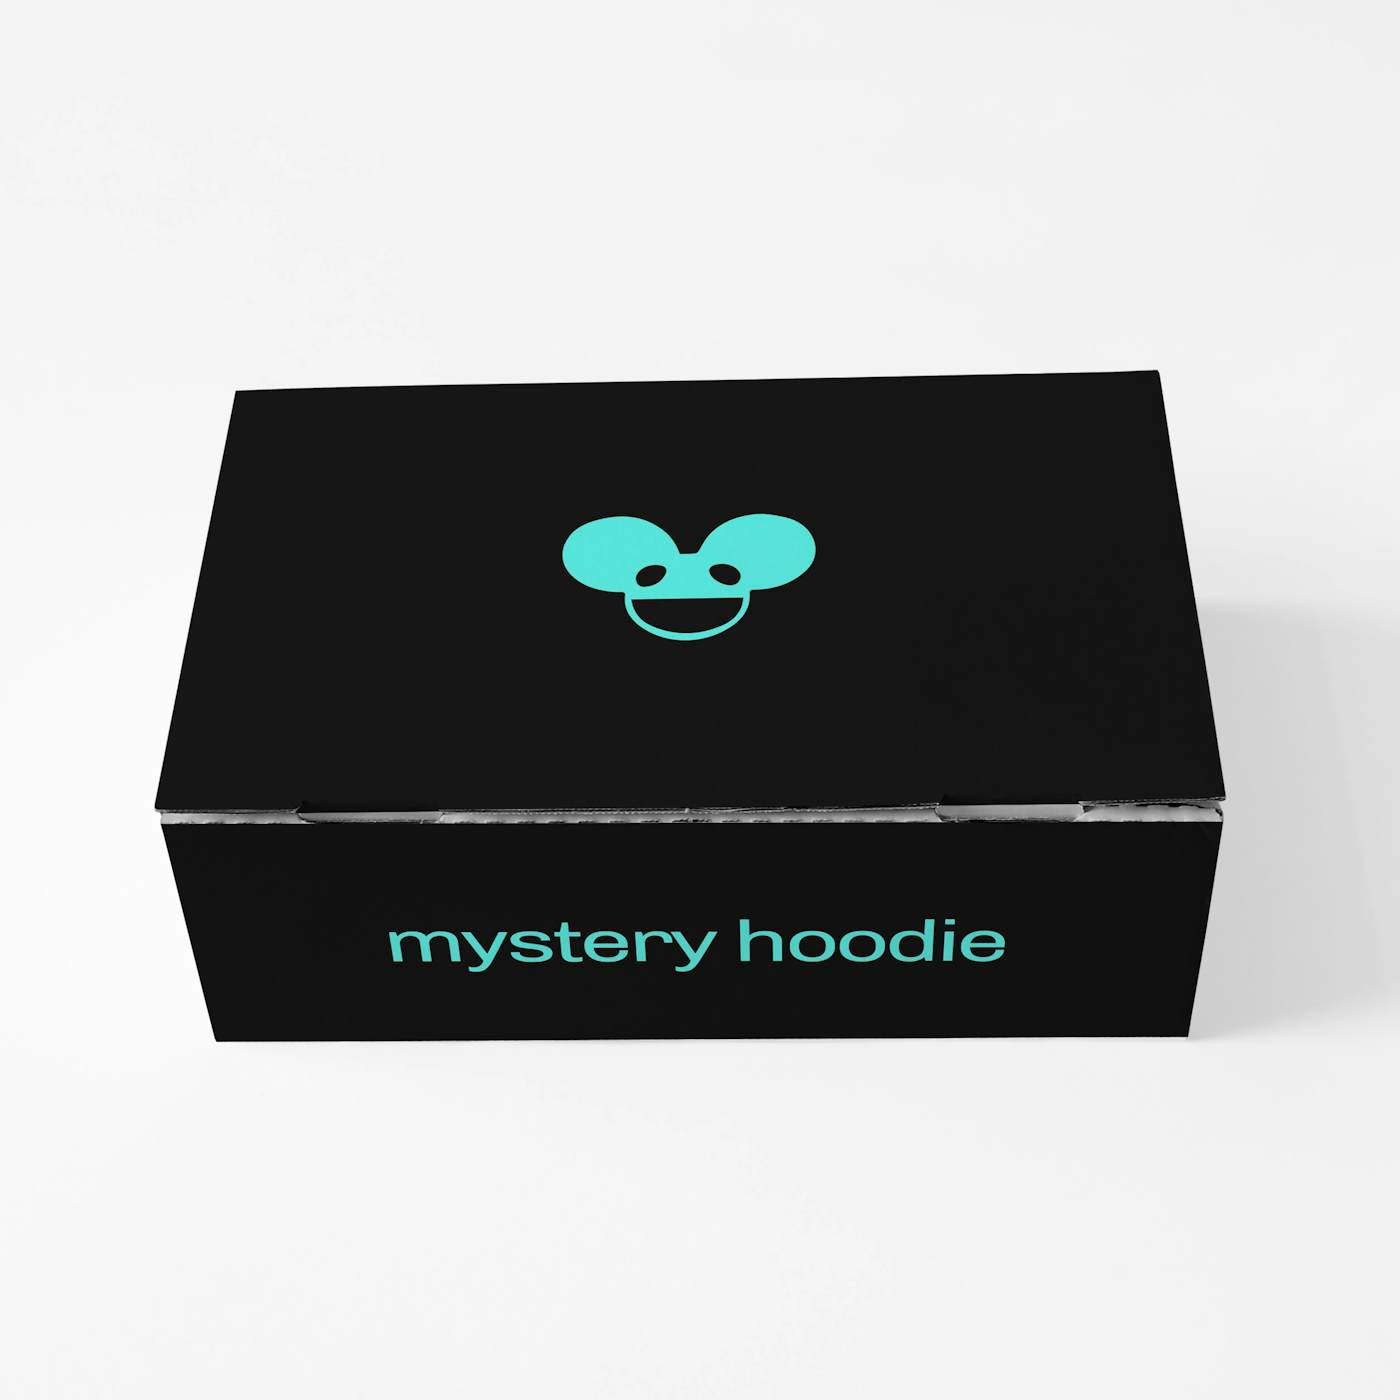 deadmau5 mystery hoodie